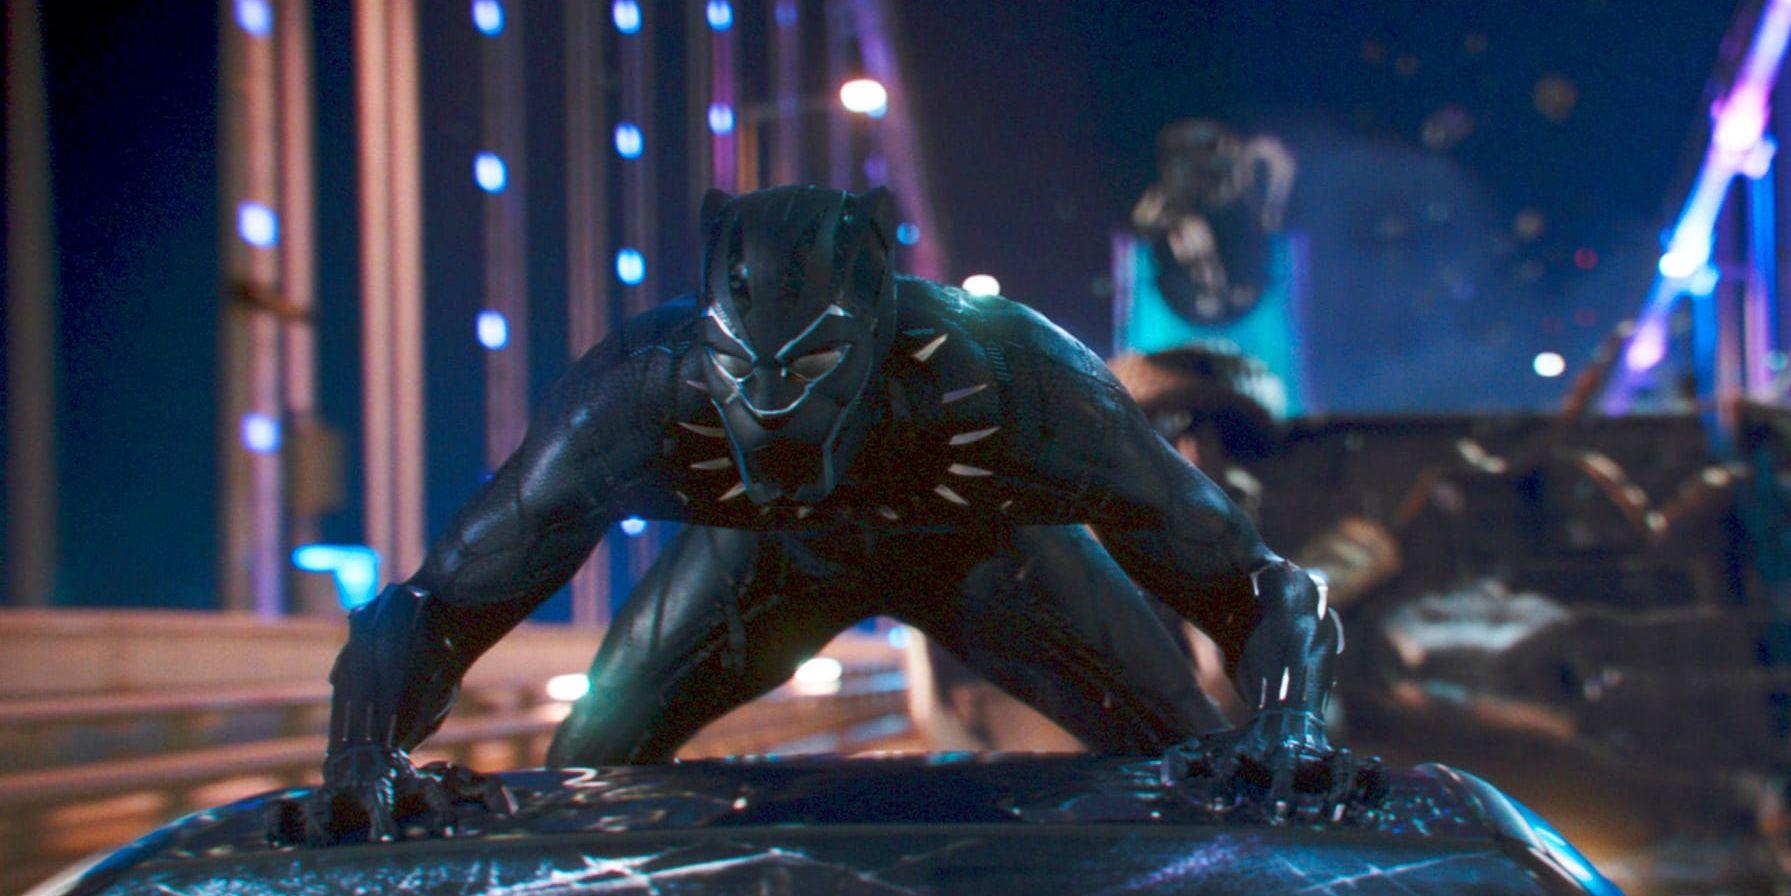 Filmen "Black Panther" drabbades av flera negativa recensioner redan innan filmen släpptes. Något sajten Rotten Tomatoes vill undvika i framtiden. Pressbild.